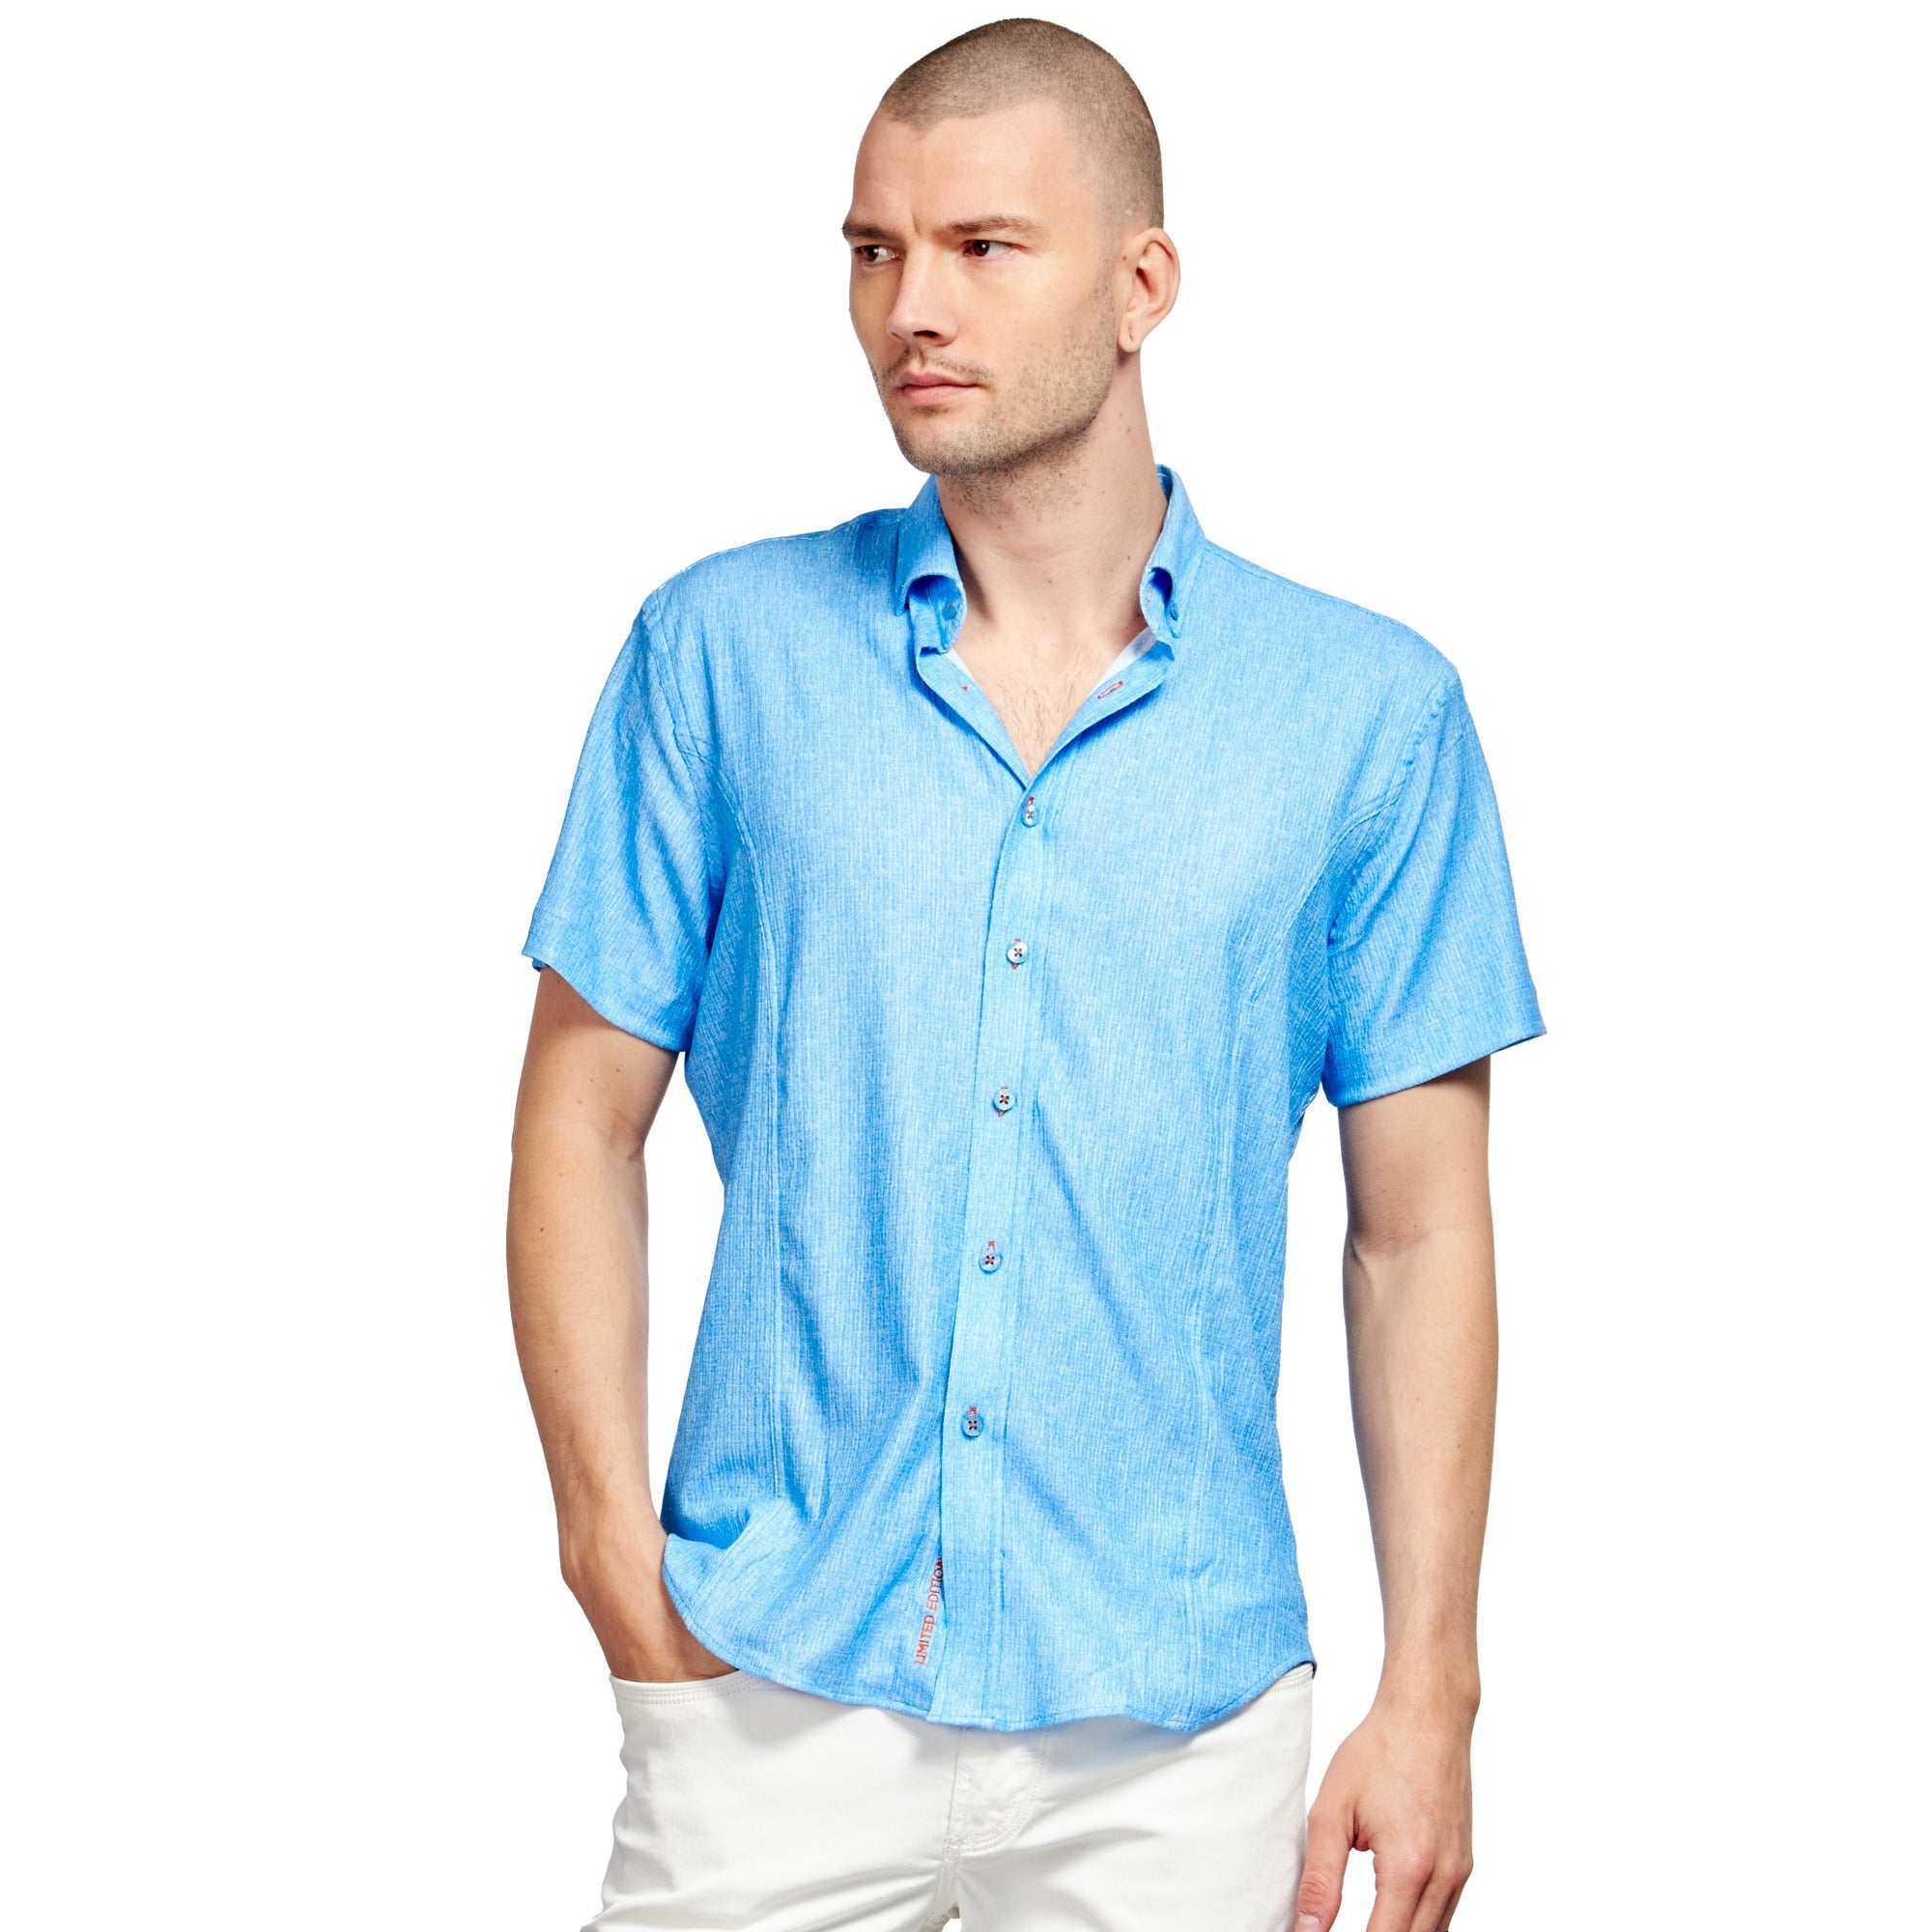 Blue Seersucker Short Sleeve Shirt With Orange Button Stitching